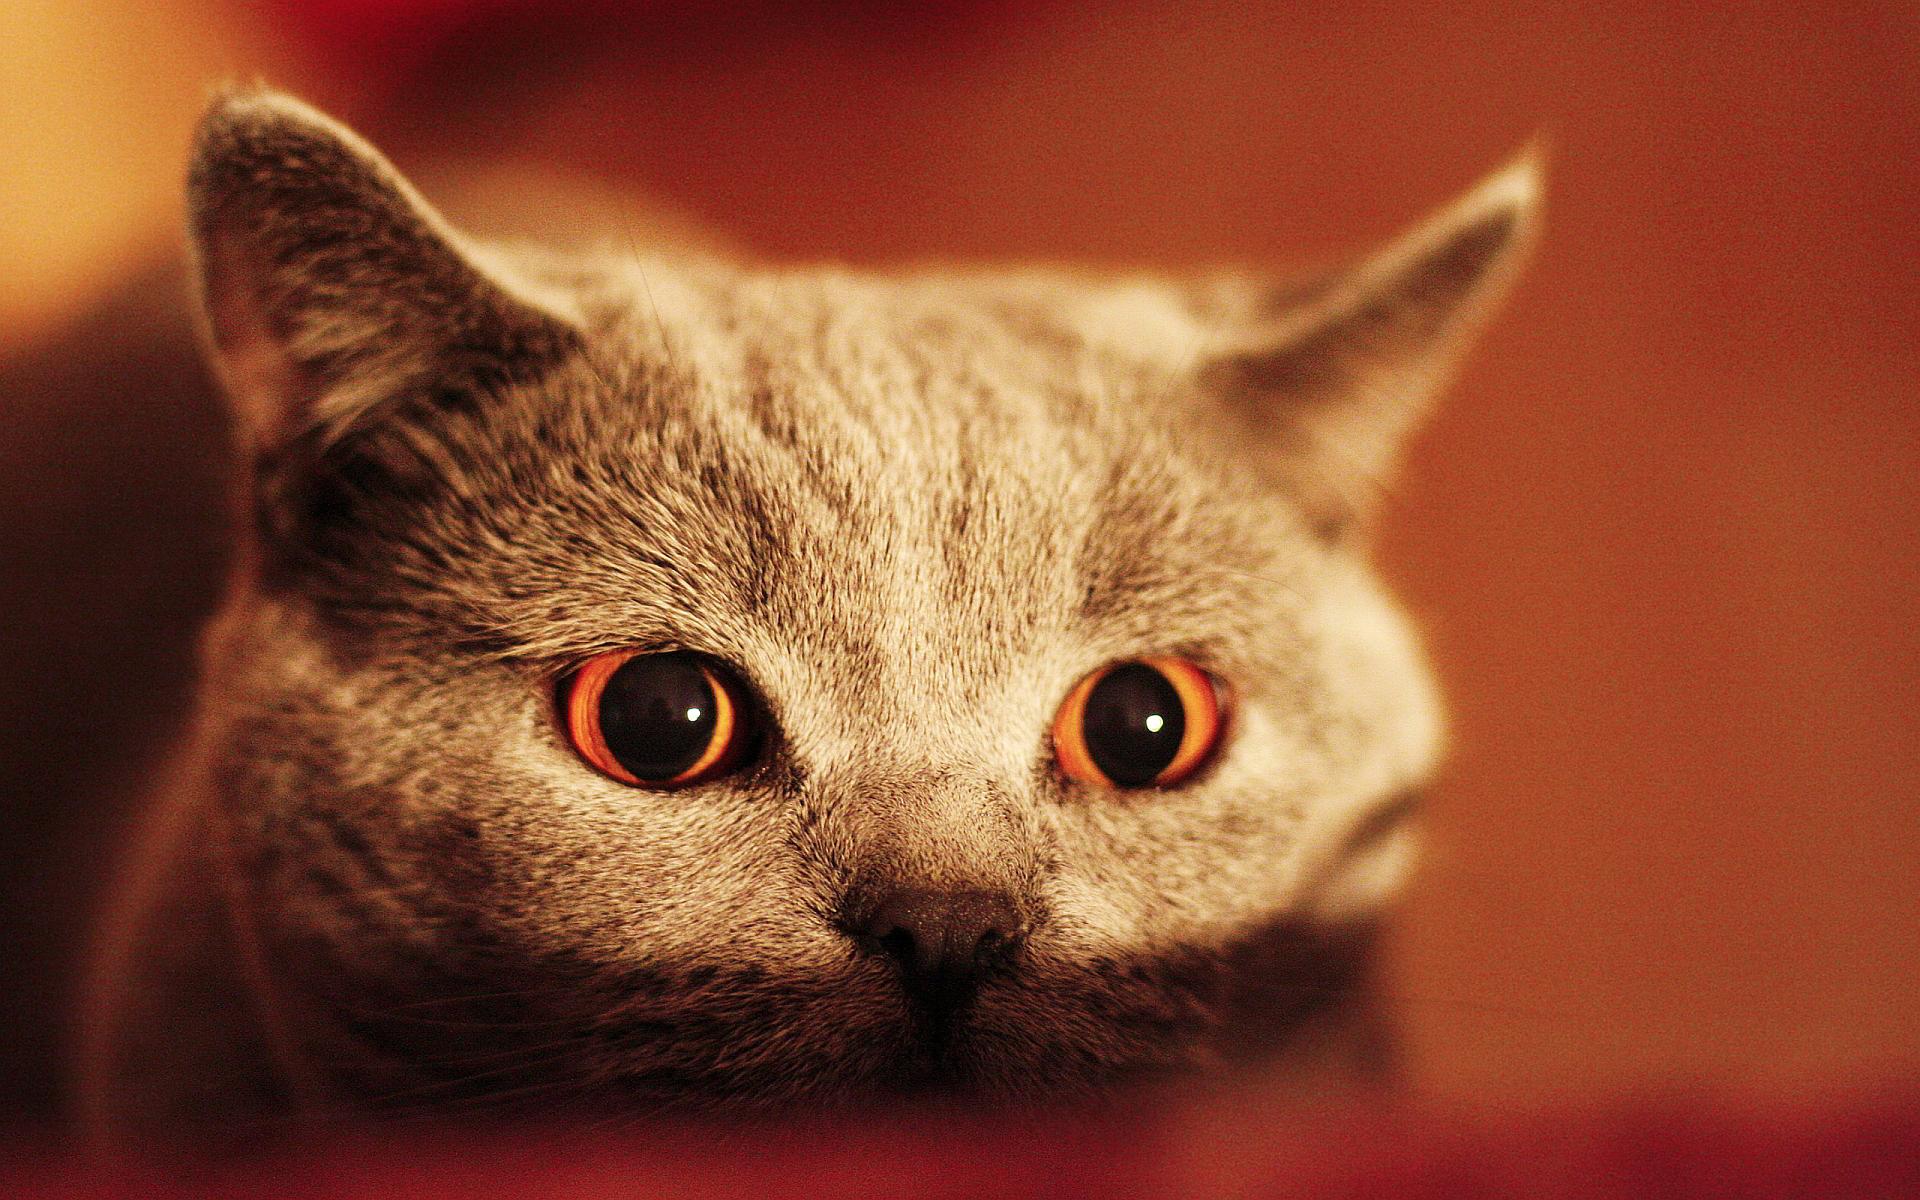 Scary cat eyes